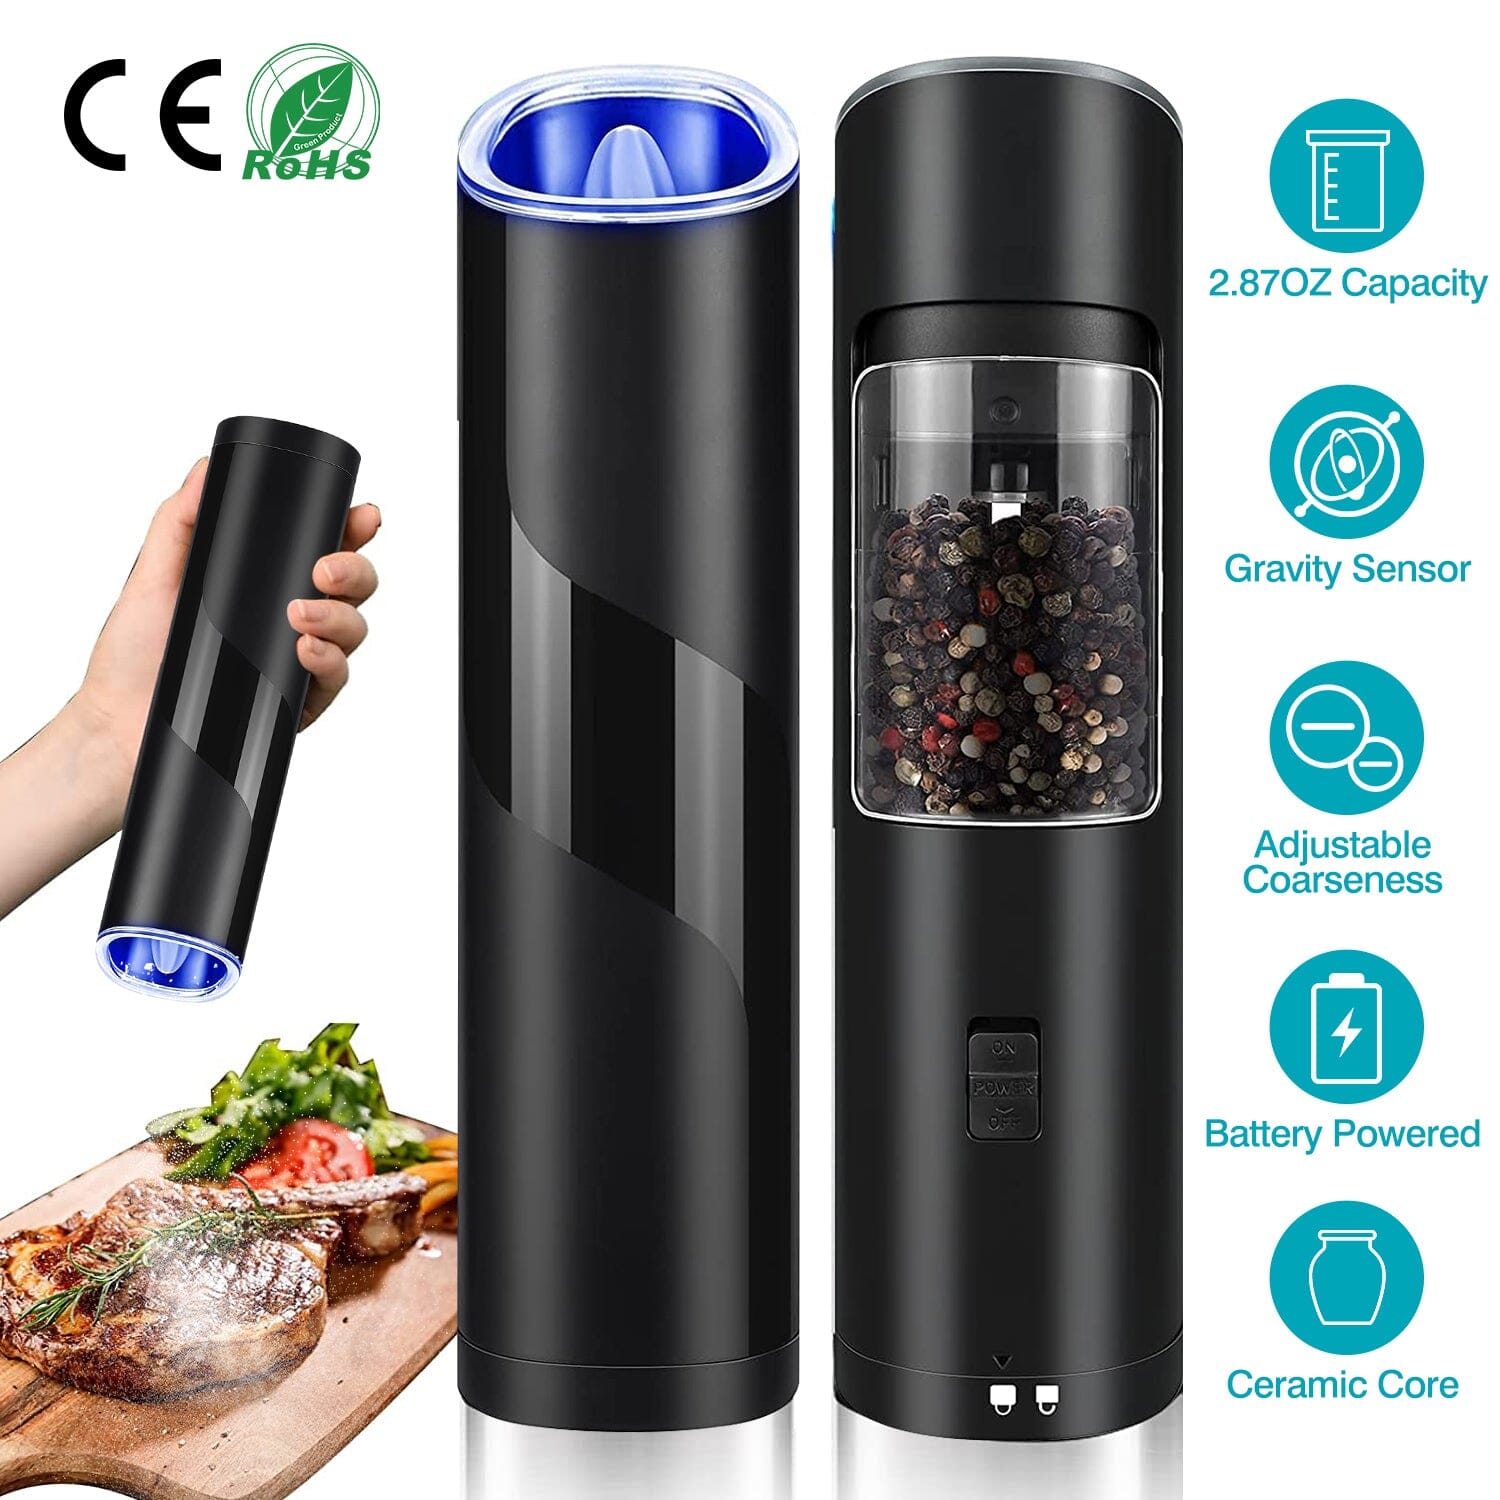 https://dailysale.com/cdn/shop/files/electric-salt-and-pepper-grinder-led-indicator-adjustable-coarseness-kitchen-tools-gadgets-dailysale-998855.jpg?v=1698788874